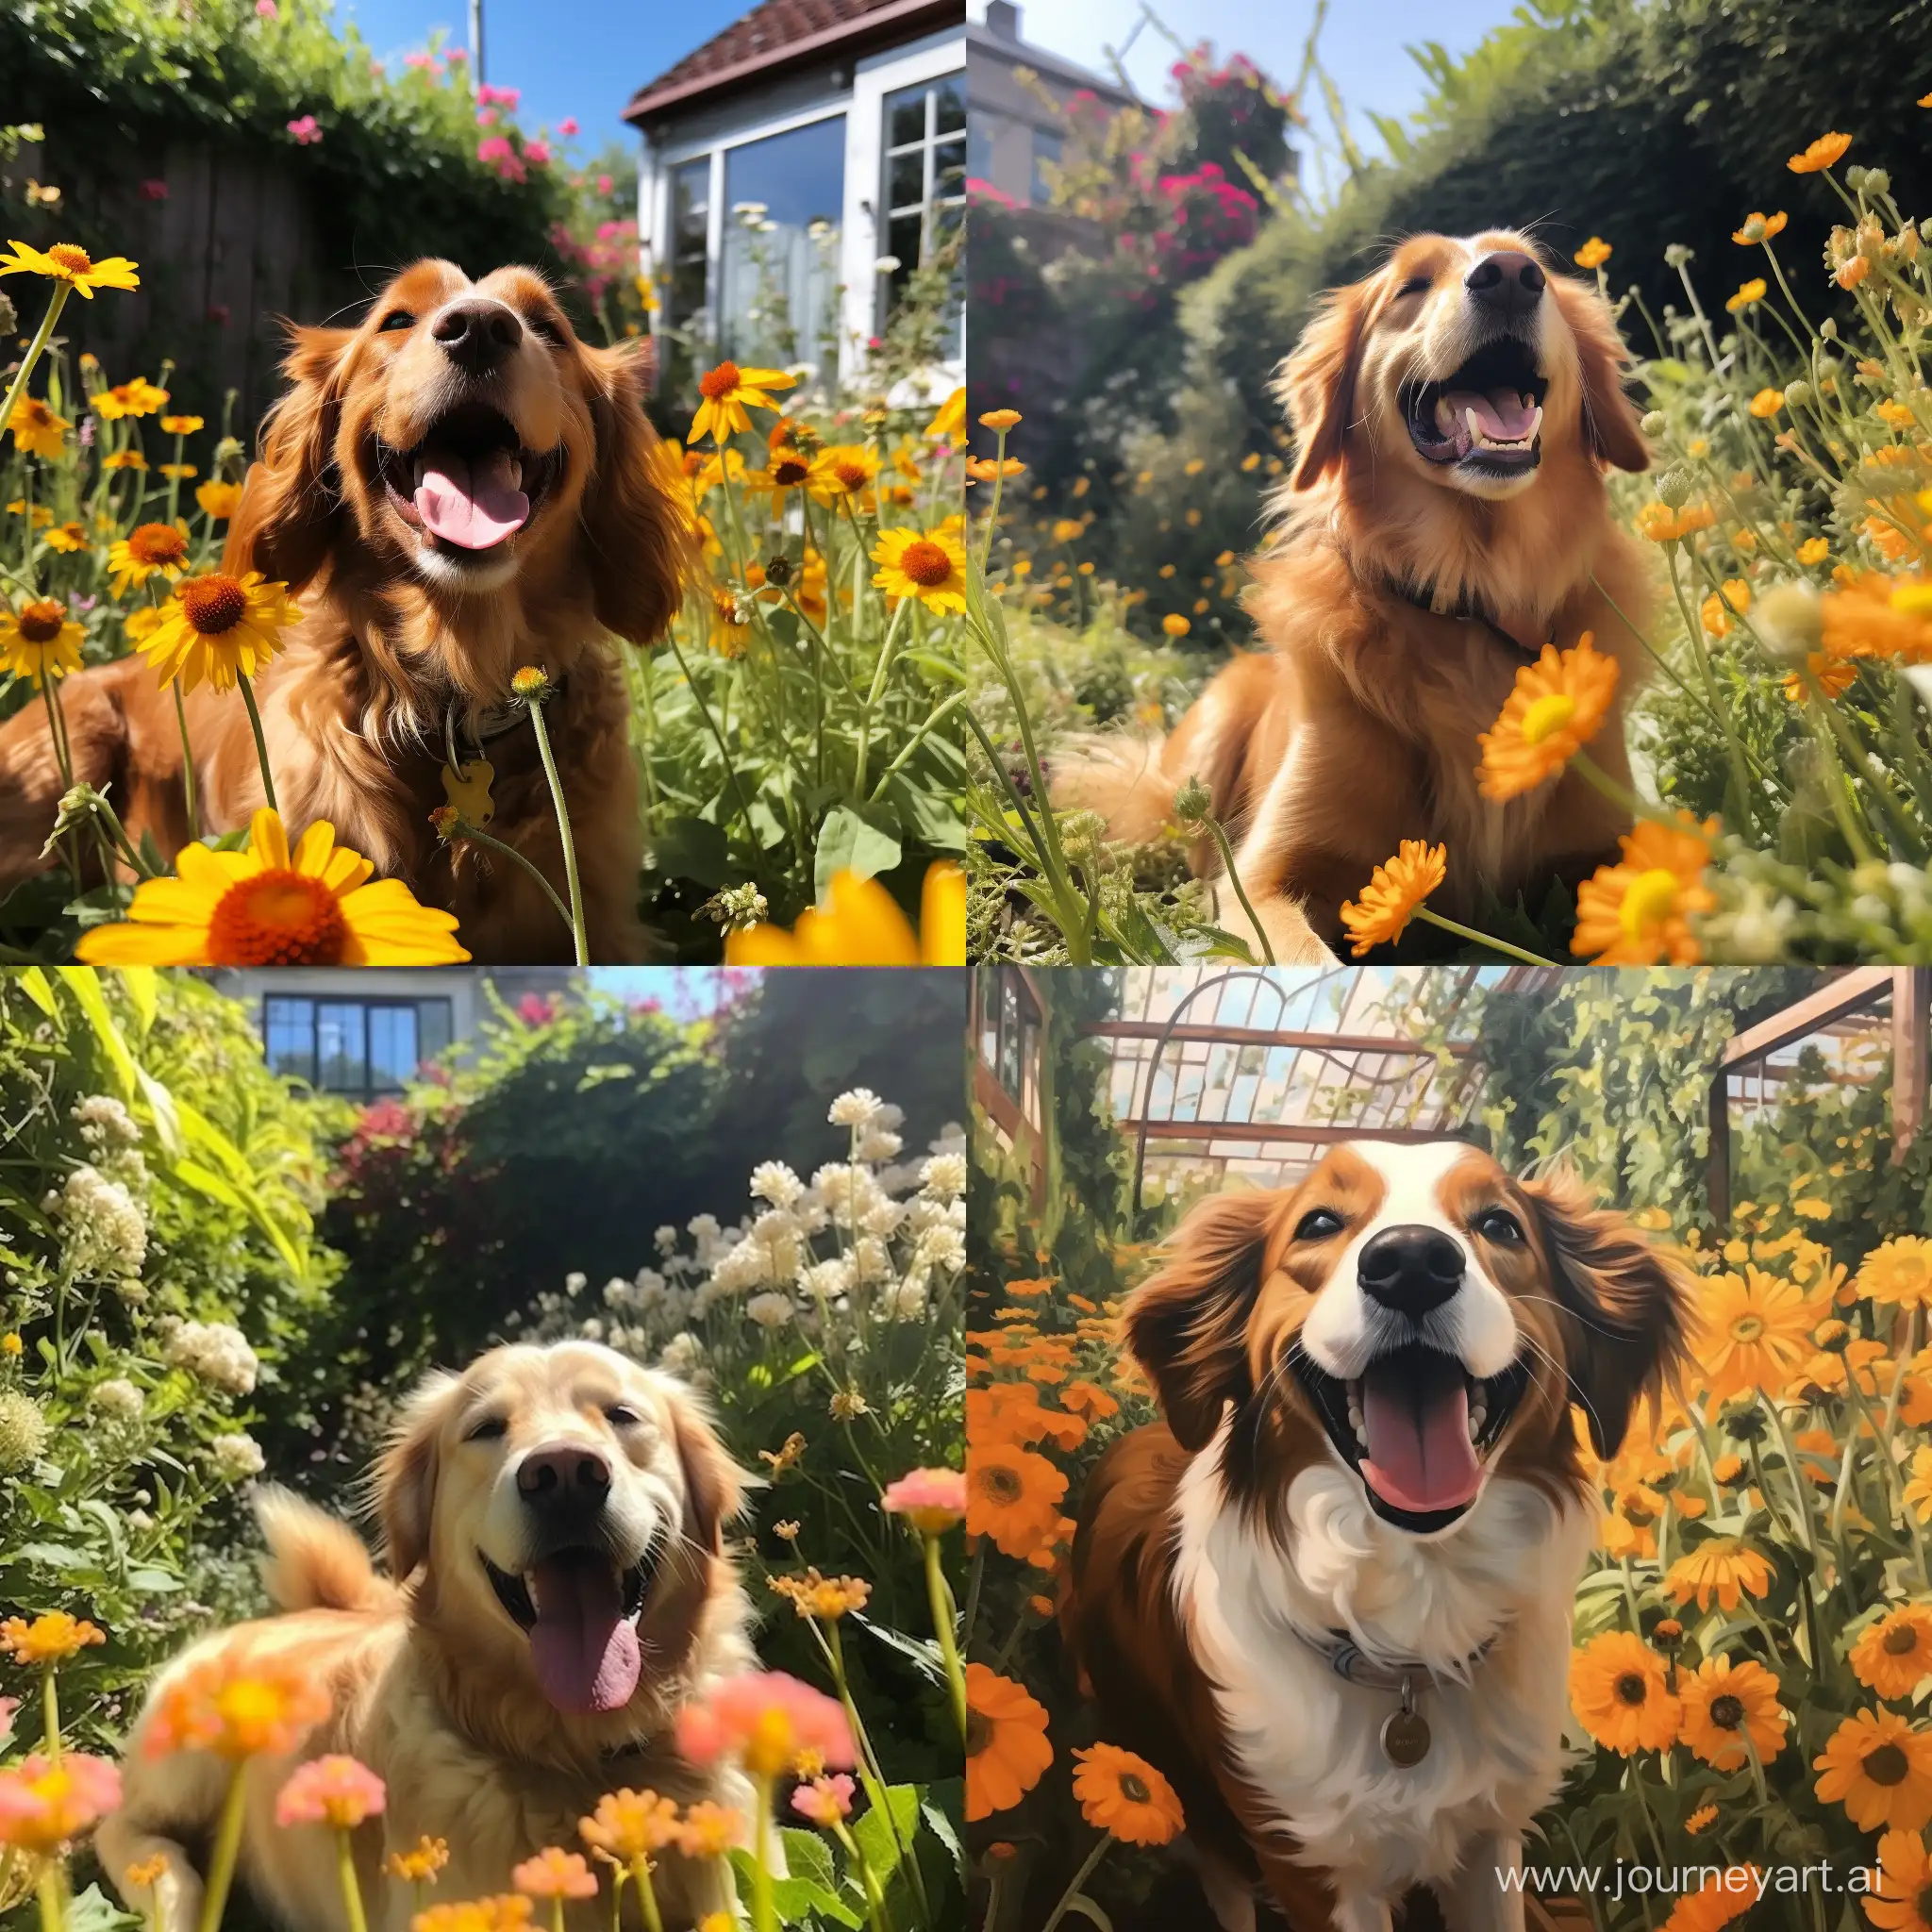 Joyful-Canine-Frolicking-in-Vibrant-Garden-Setting